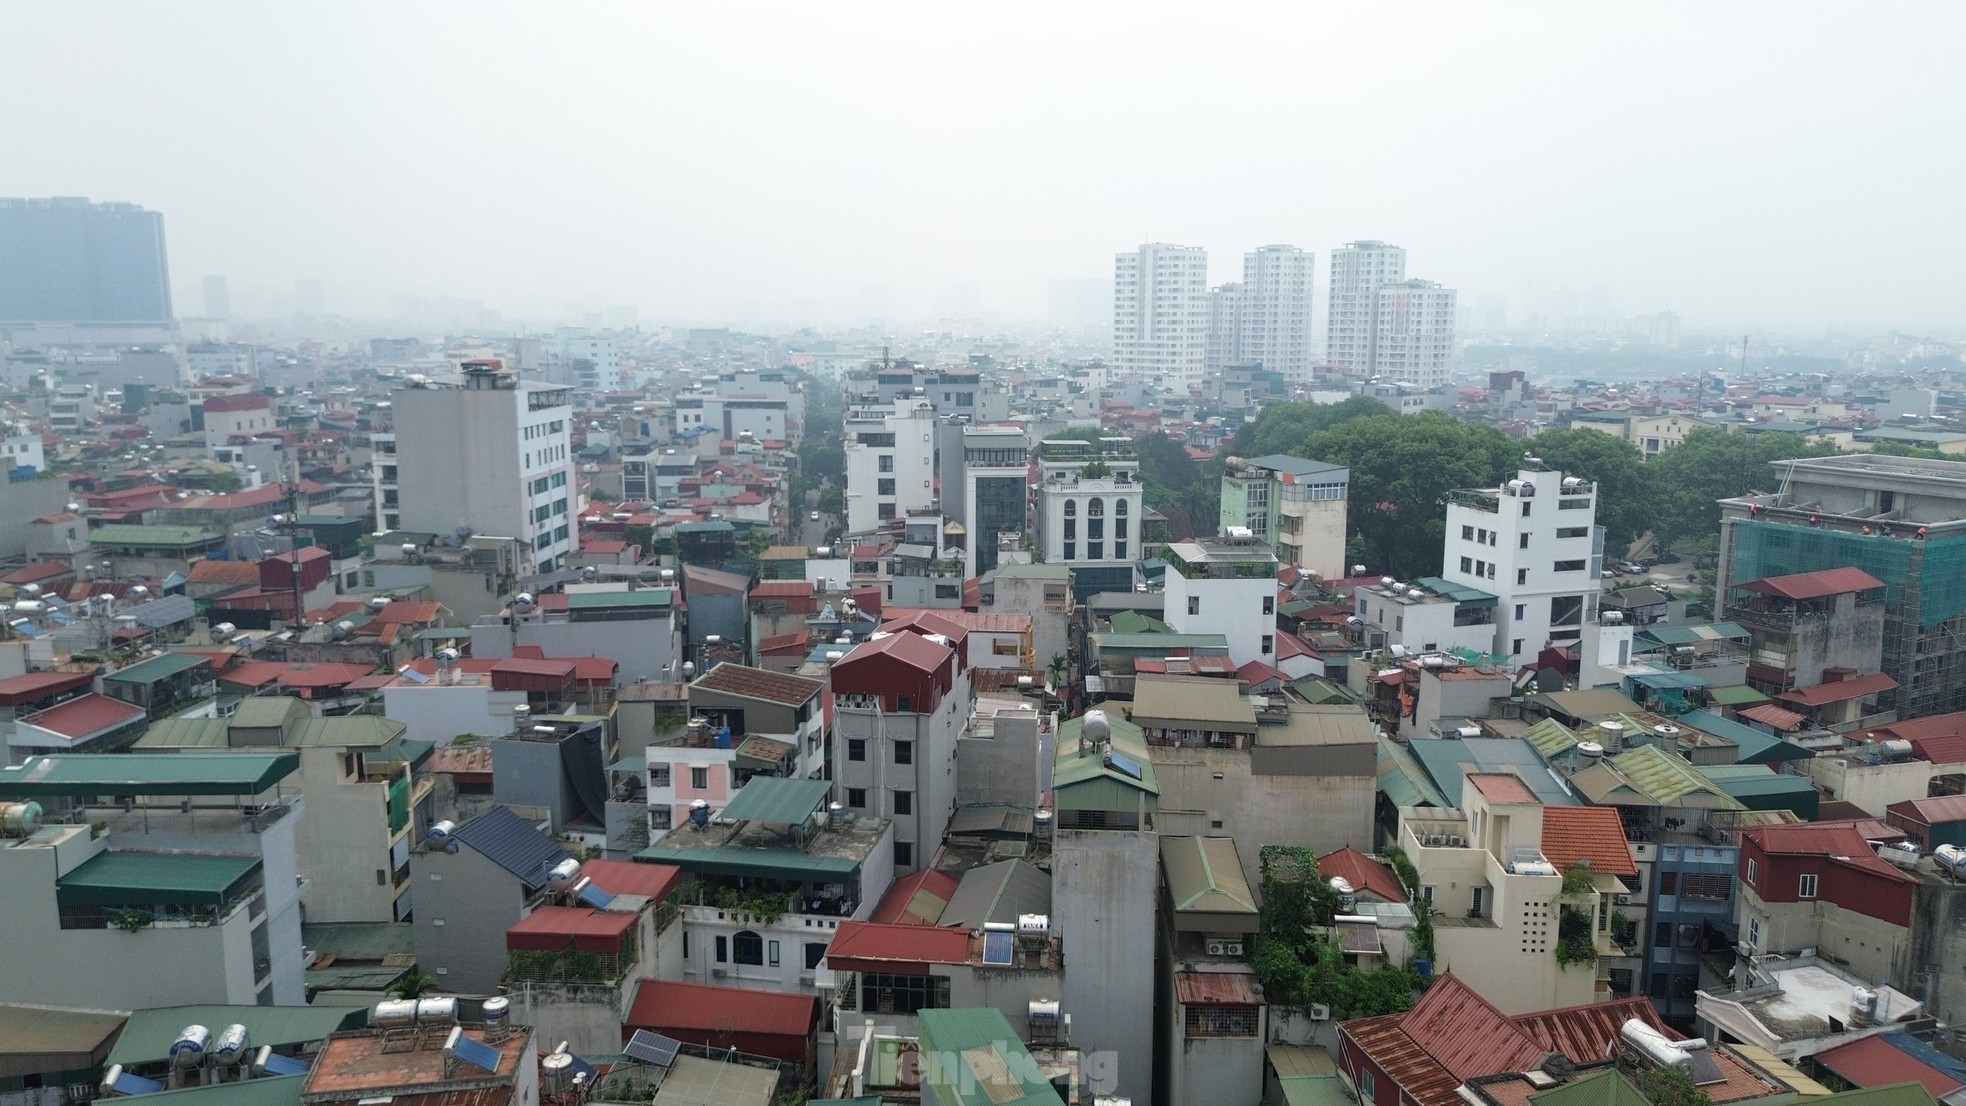 Nhà trọ, chung cư mini tràn lan không đảm bảo phòng cháy chữa cháy ở Hà Nội - Ảnh 10